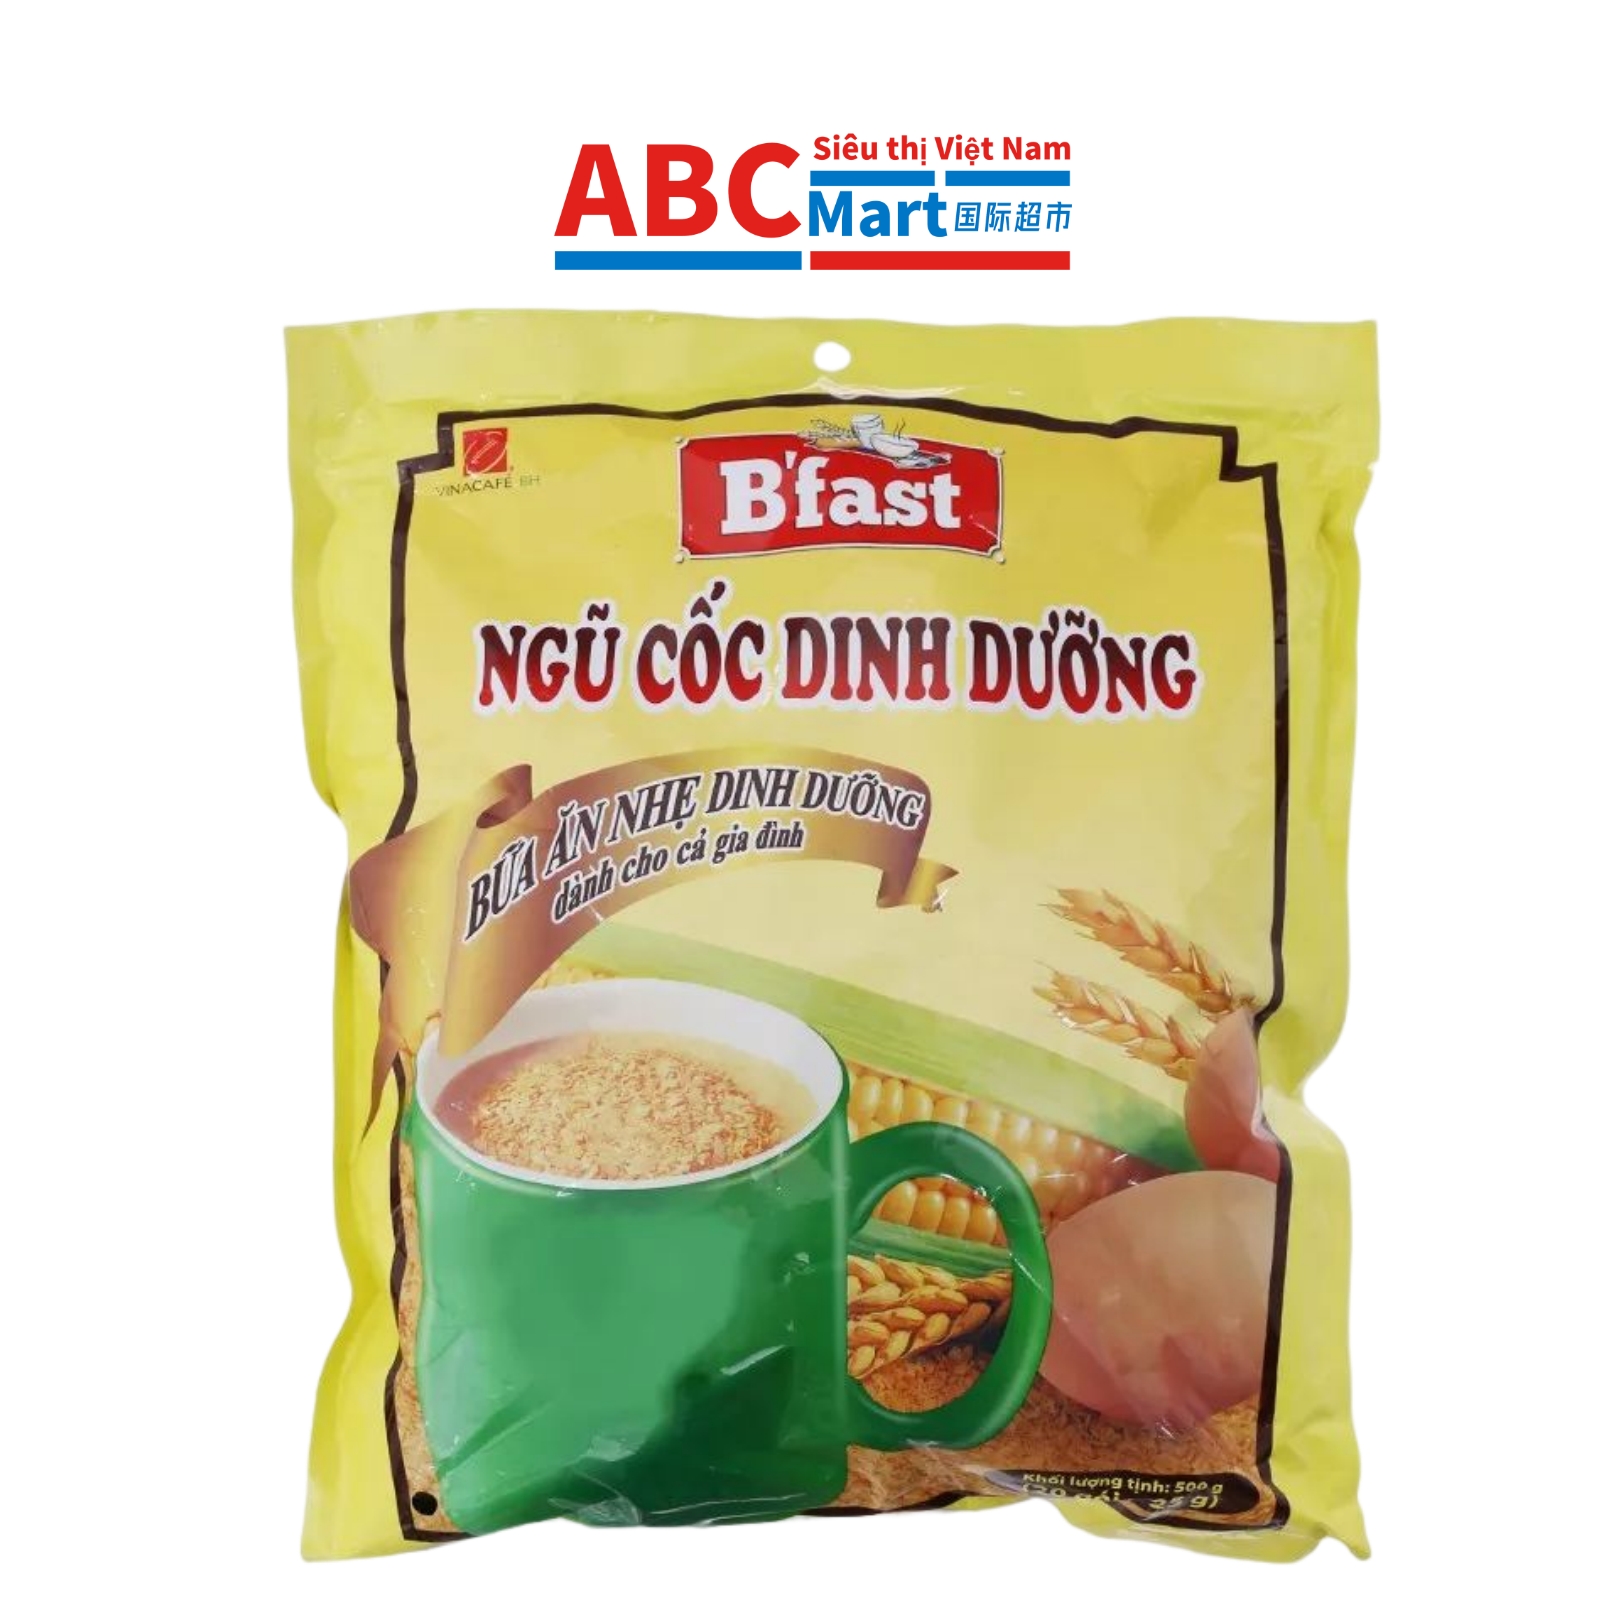 【Việt Nam-Ngũ cốc dinh dưỡng Vinacafé B’fast bịch 500g】营养麦片500g-ABCMart 国际超市